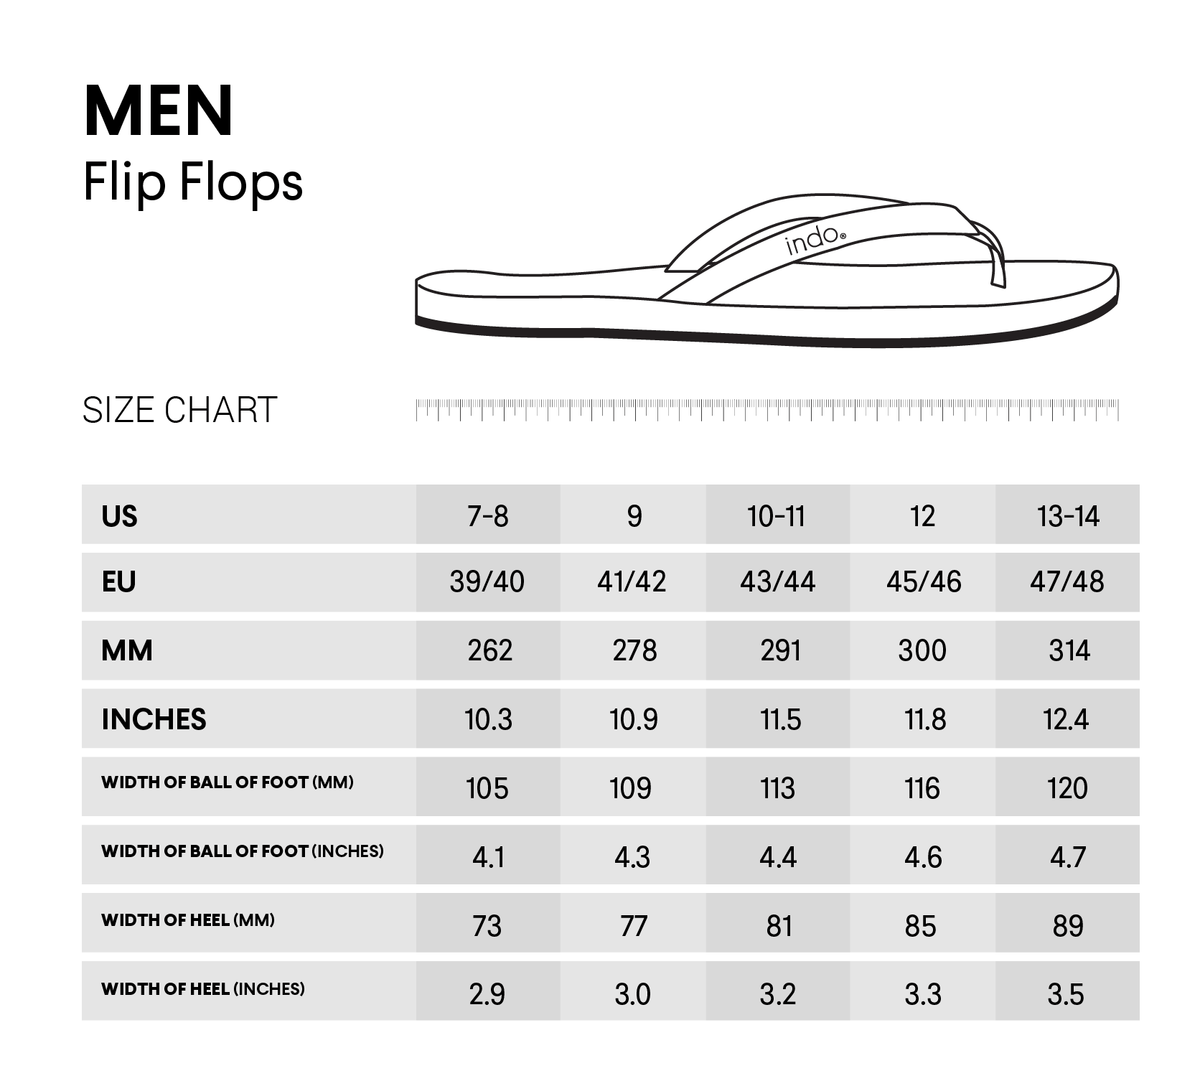 Men’s Flip Flops - Shore/Shore Light by Indosole